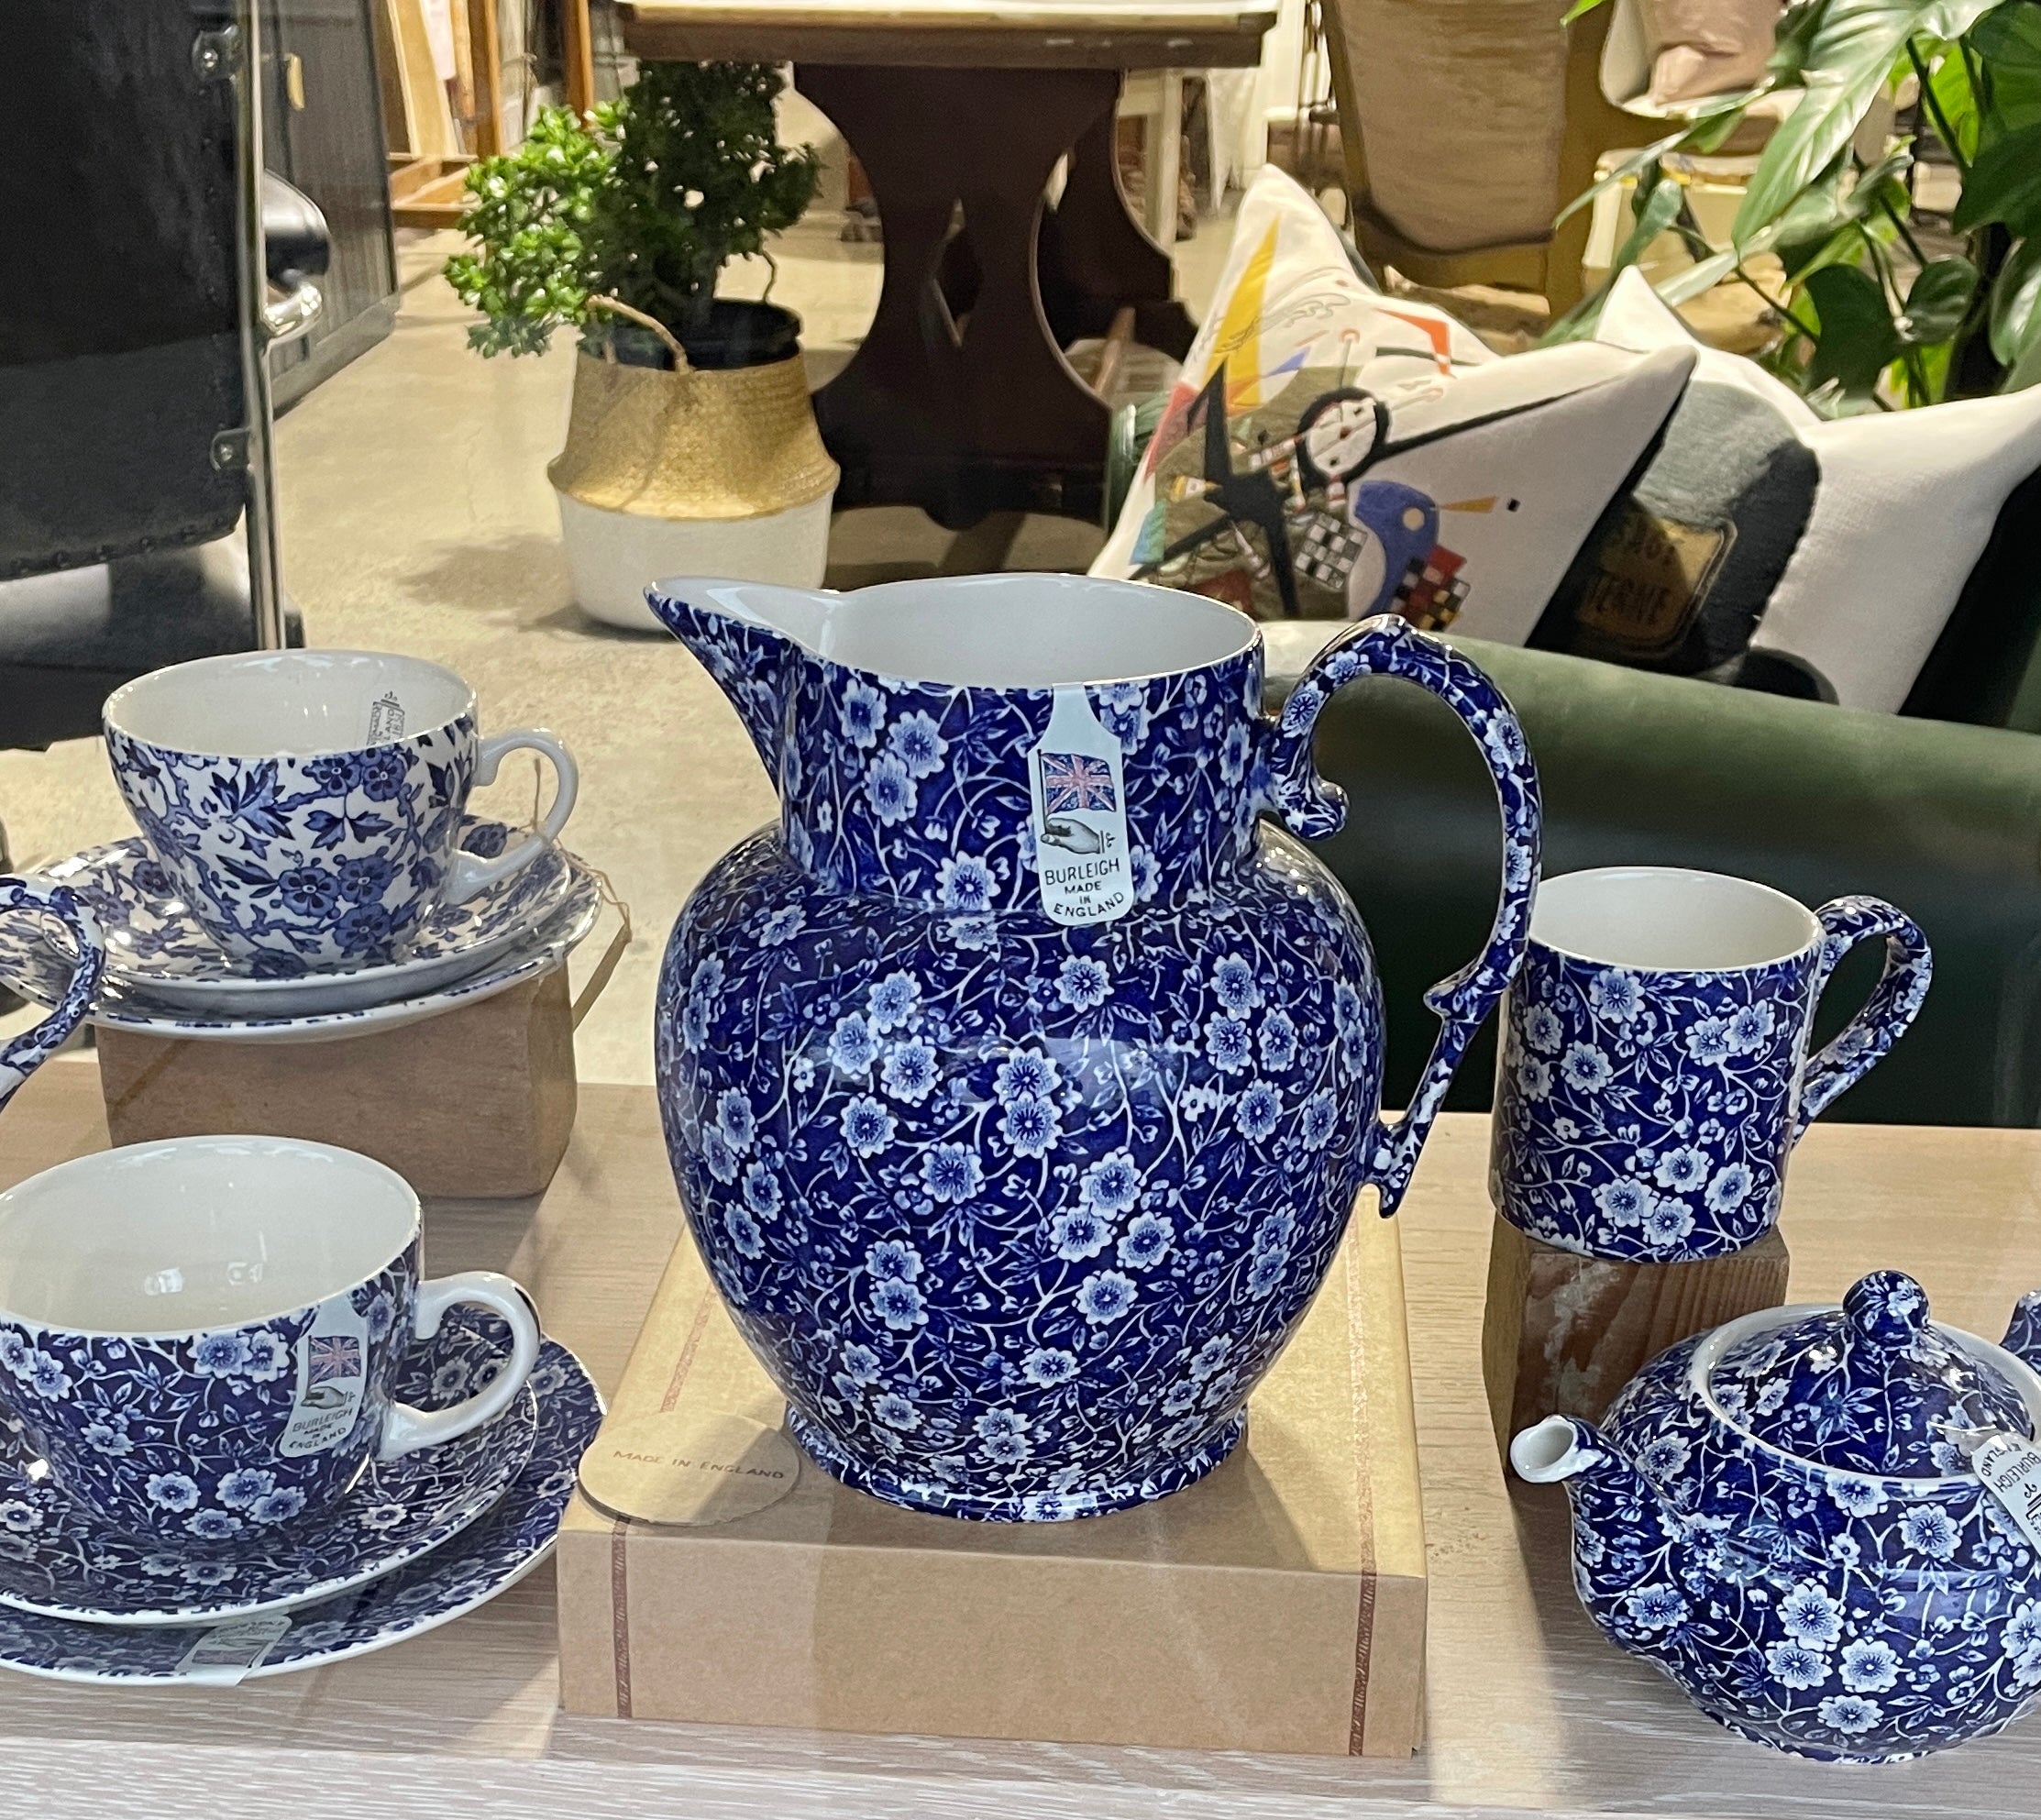 Burleigh UK Blue Calico - Mug